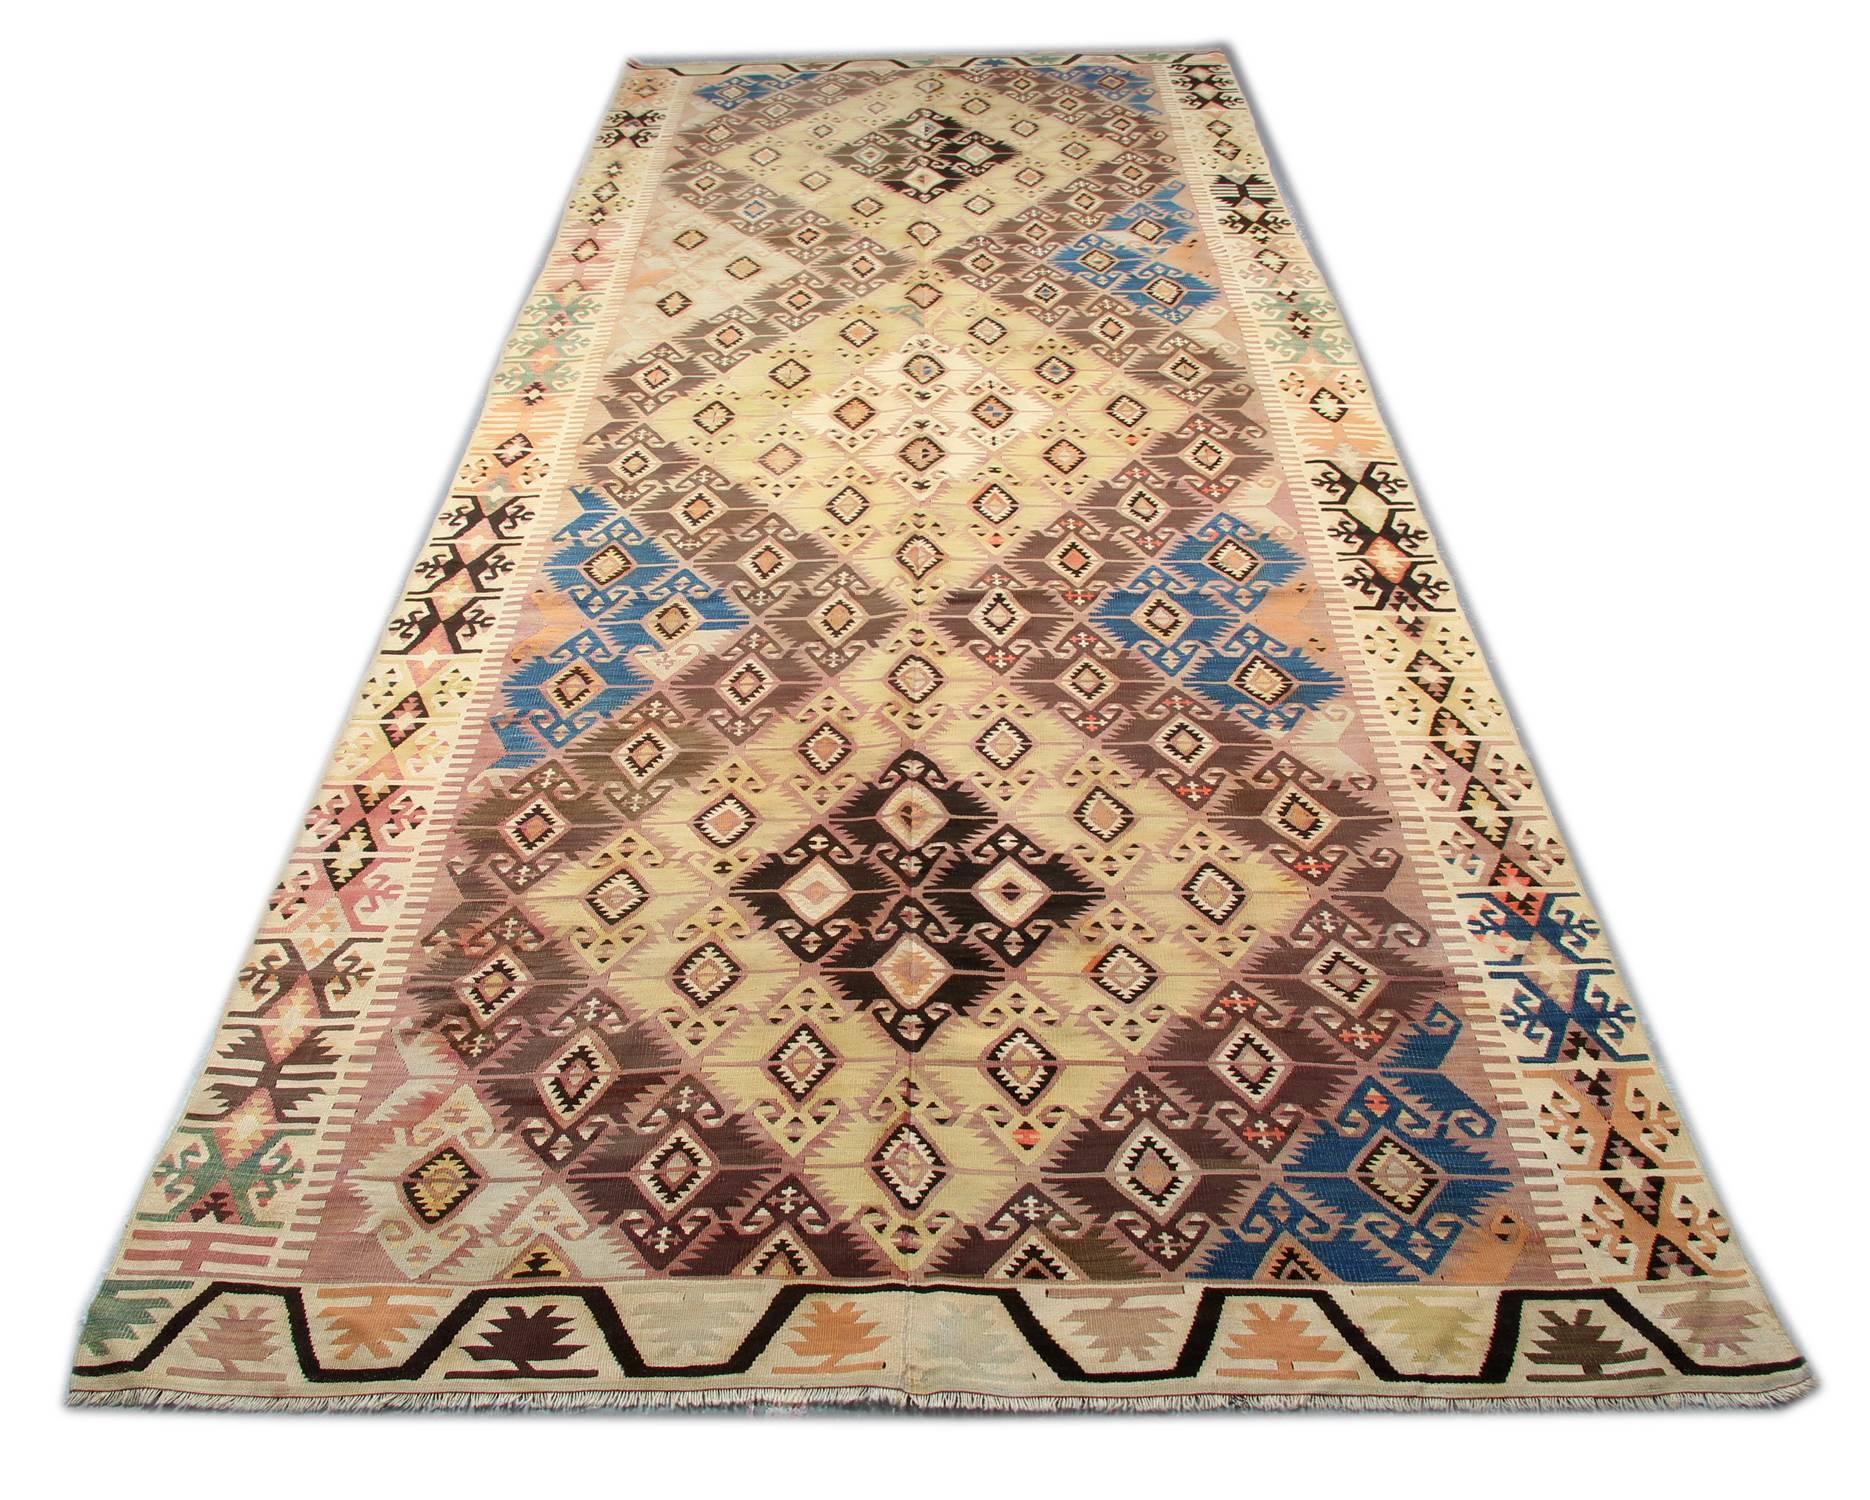 Ce tapis coloré fait à la main est un tapis turc tissé par des tisserands très qualifiés en Turquie, qui ont utilisé de la laine et du coton de la plus haute qualité. Le tapis à tissage plat présente des couleurs orange clair, orange, vert, blanc,